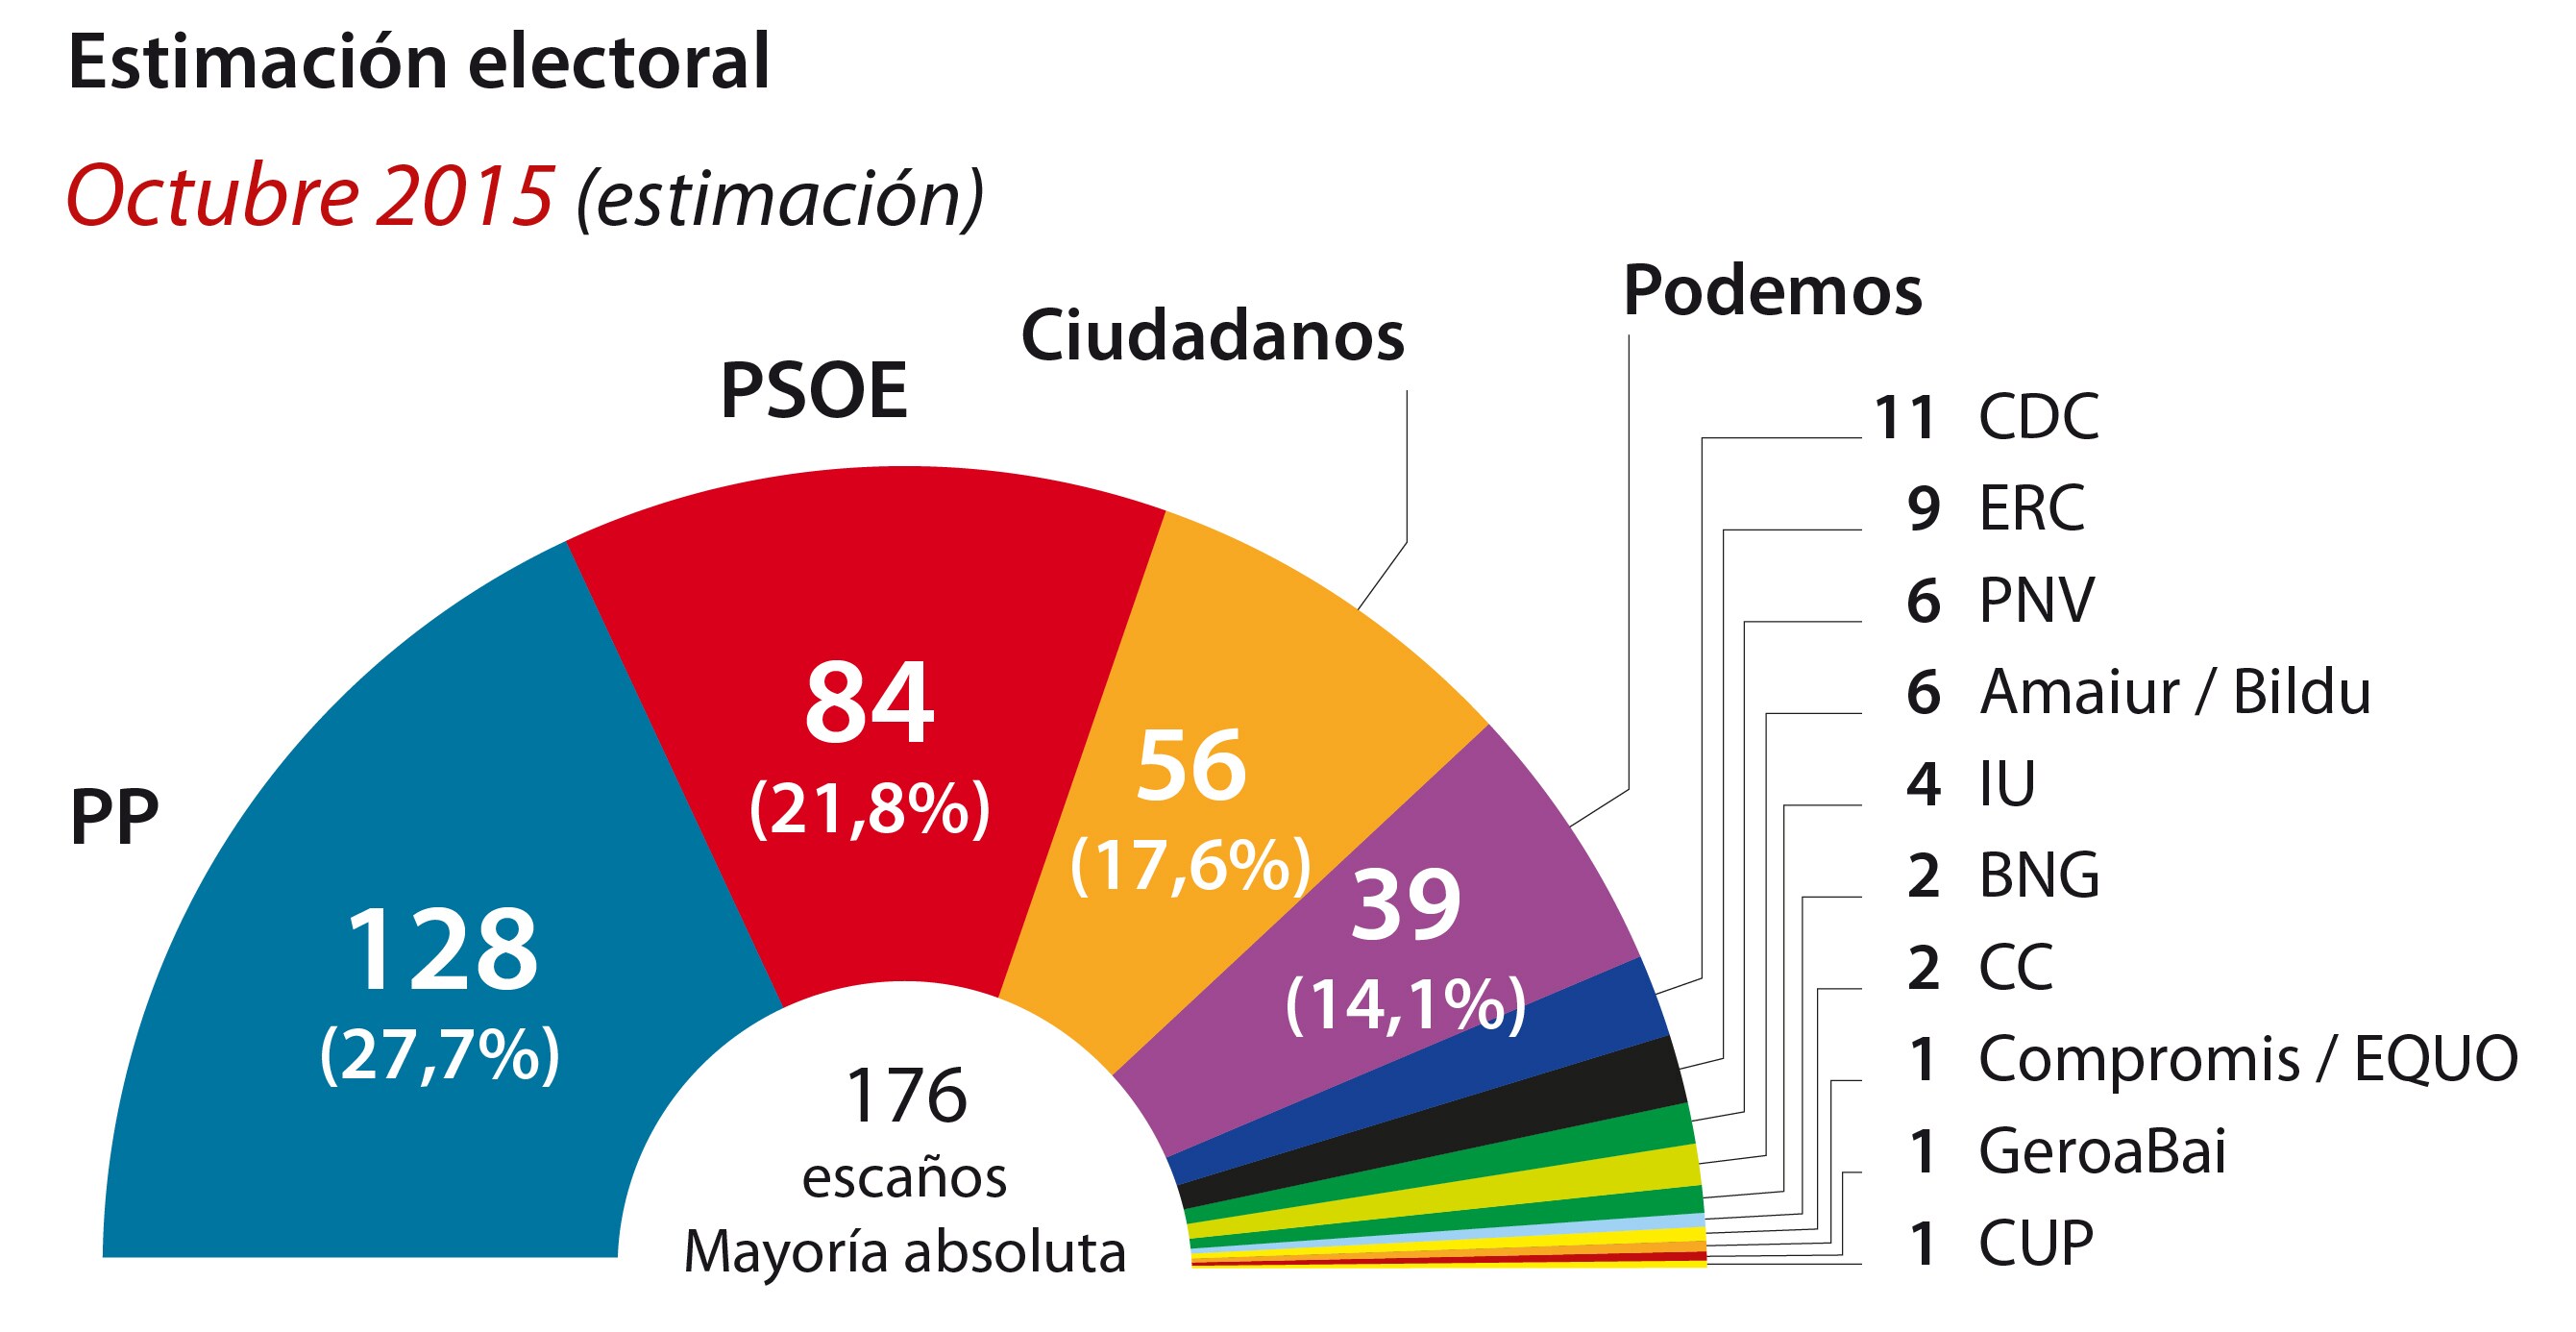 El PP sigue en caída pero logra mayoría absoluta con Ciudadanos